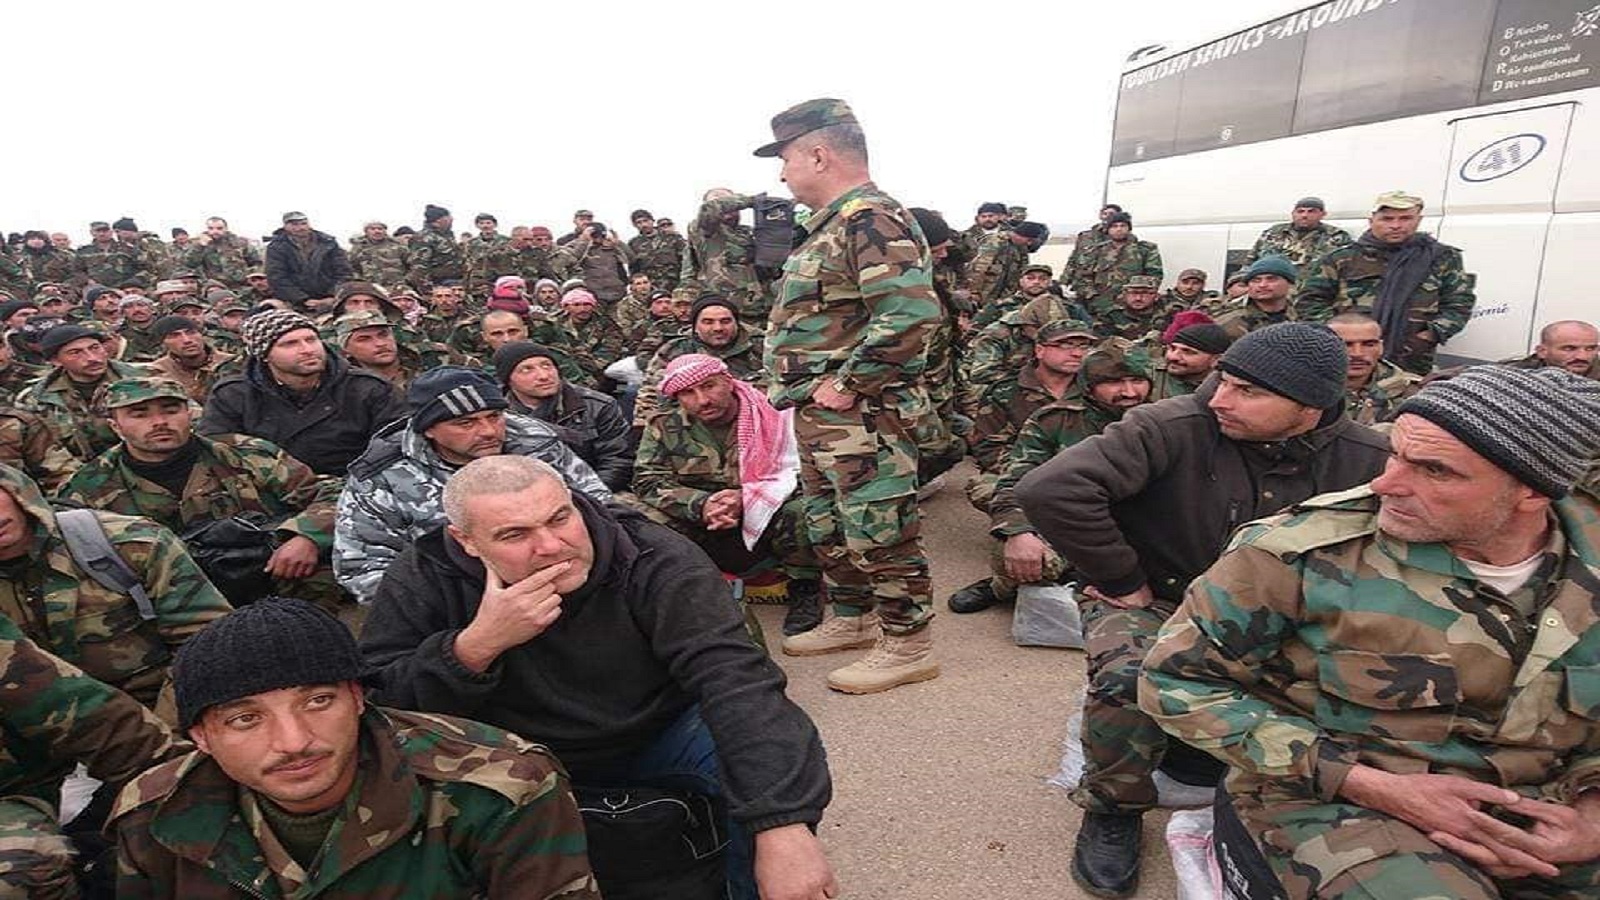 وزارة الدفاع السورية: عزيزي المقاتل..إشتكِ لنا لا منّا..وسنتابعك